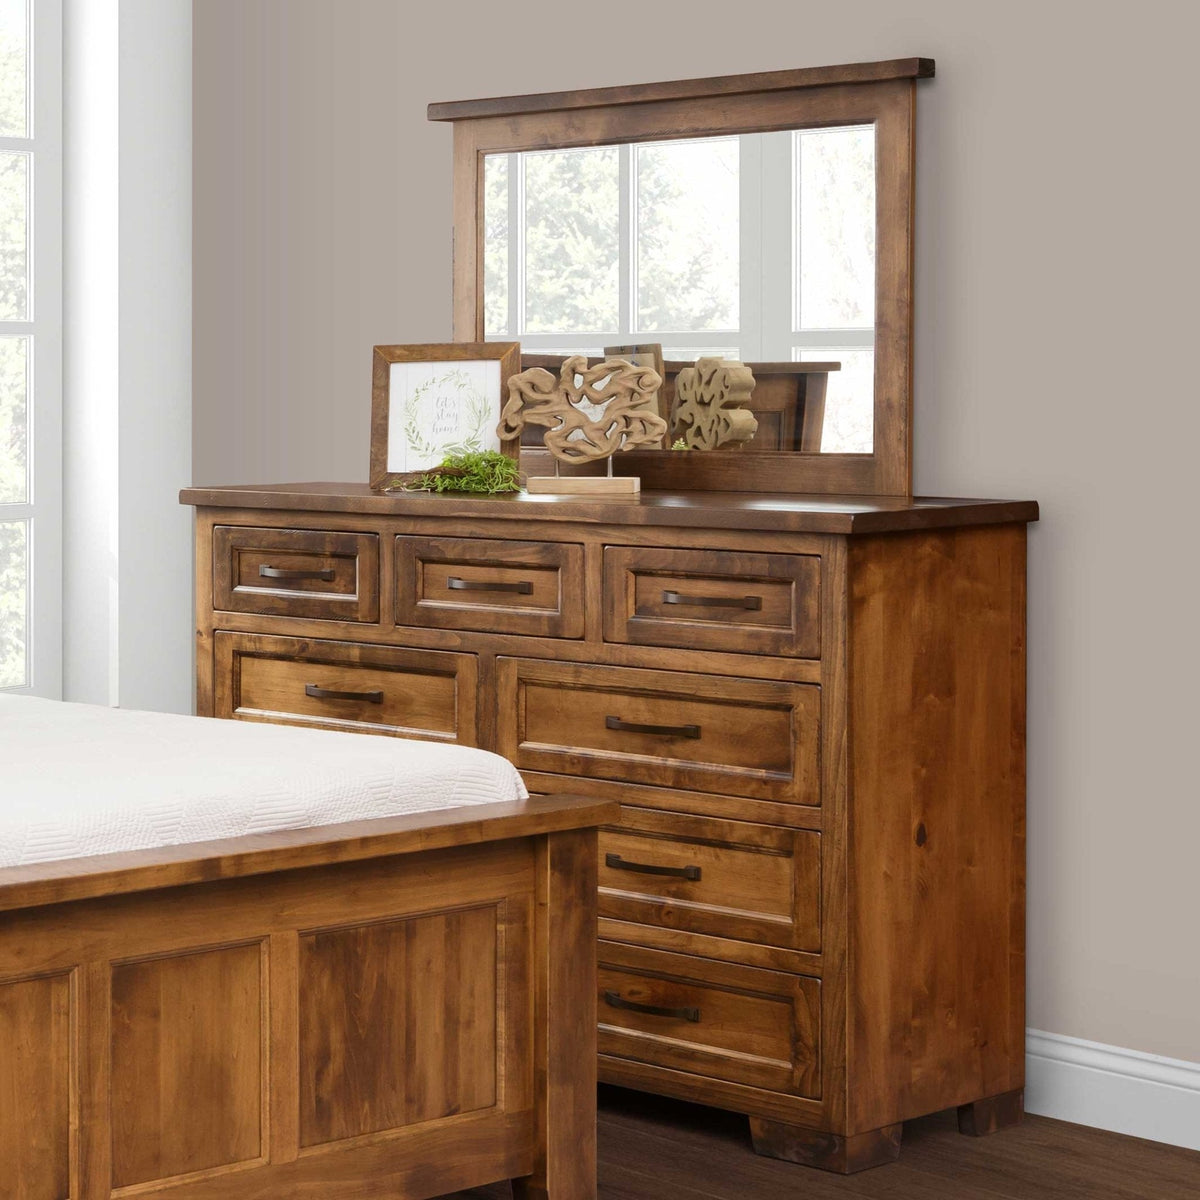 Amish Hudson Solid Wood 5pc Bedroom Set - snyders.furniture